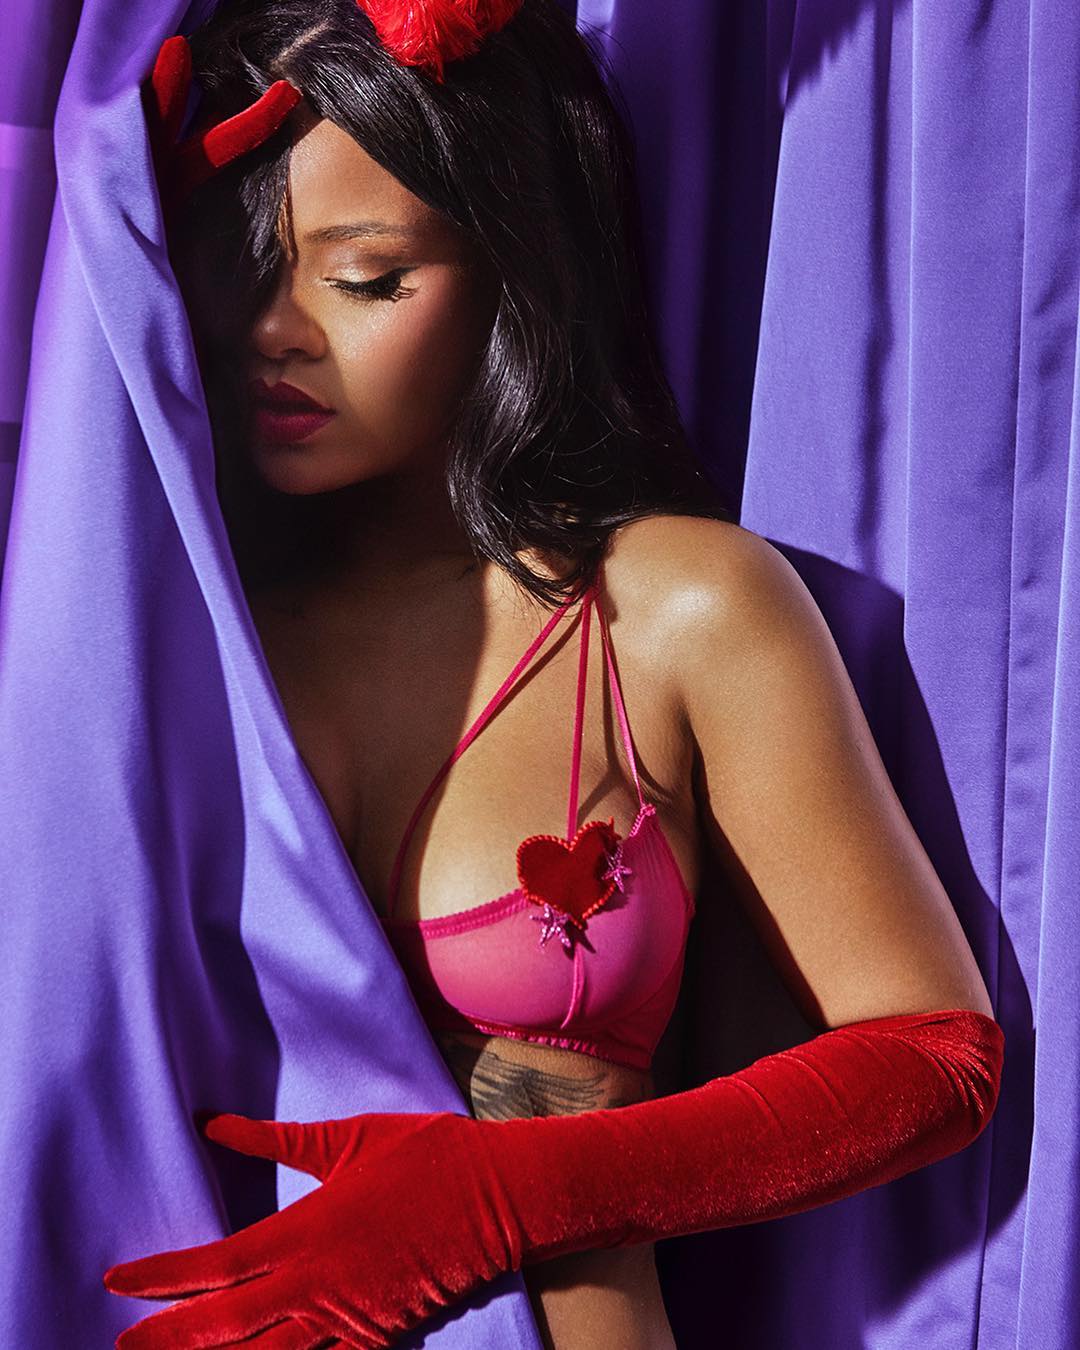 hình ảnh nóng bỏng của nữ ca sĩ đình đám Rihanna ảnh 3